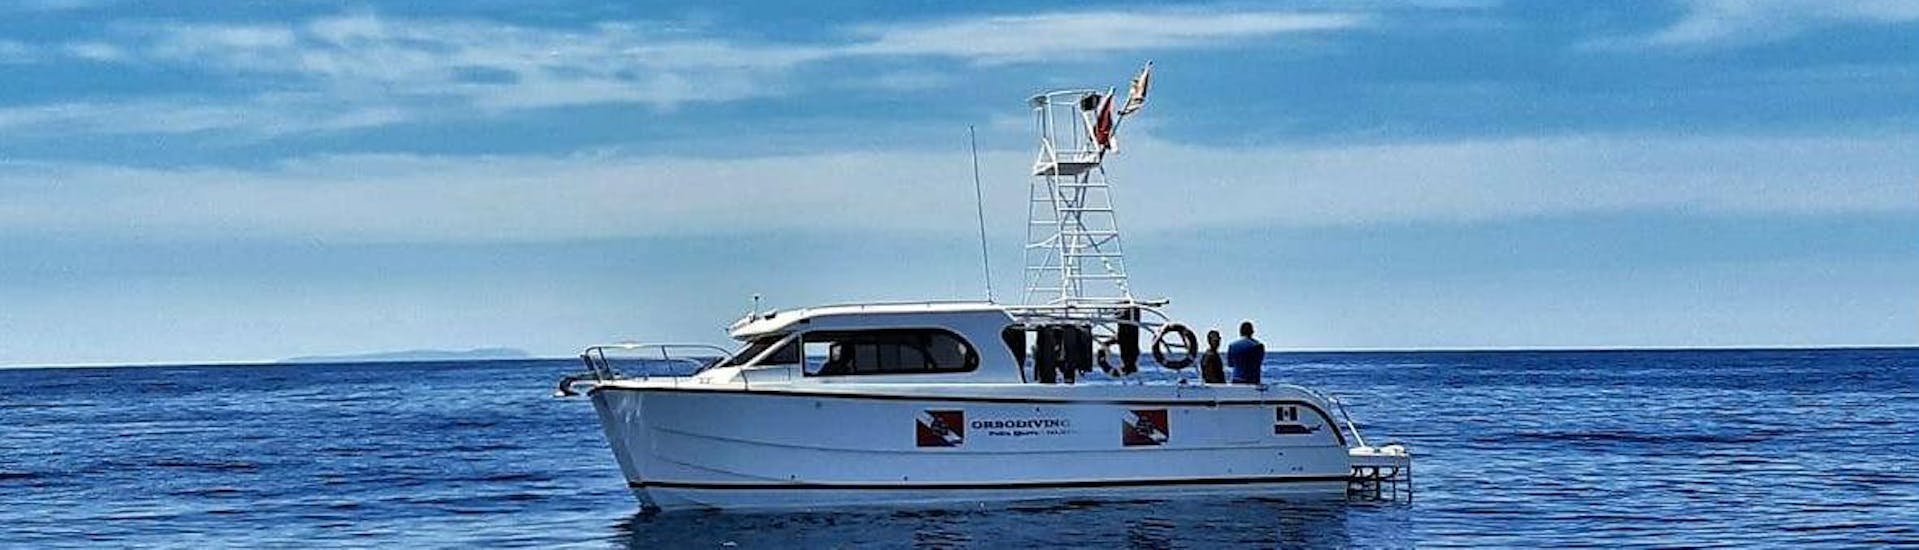 Paseo en barco de Poltu Quatu a Costa Esmeralda con baño en el mar & visita guiada.